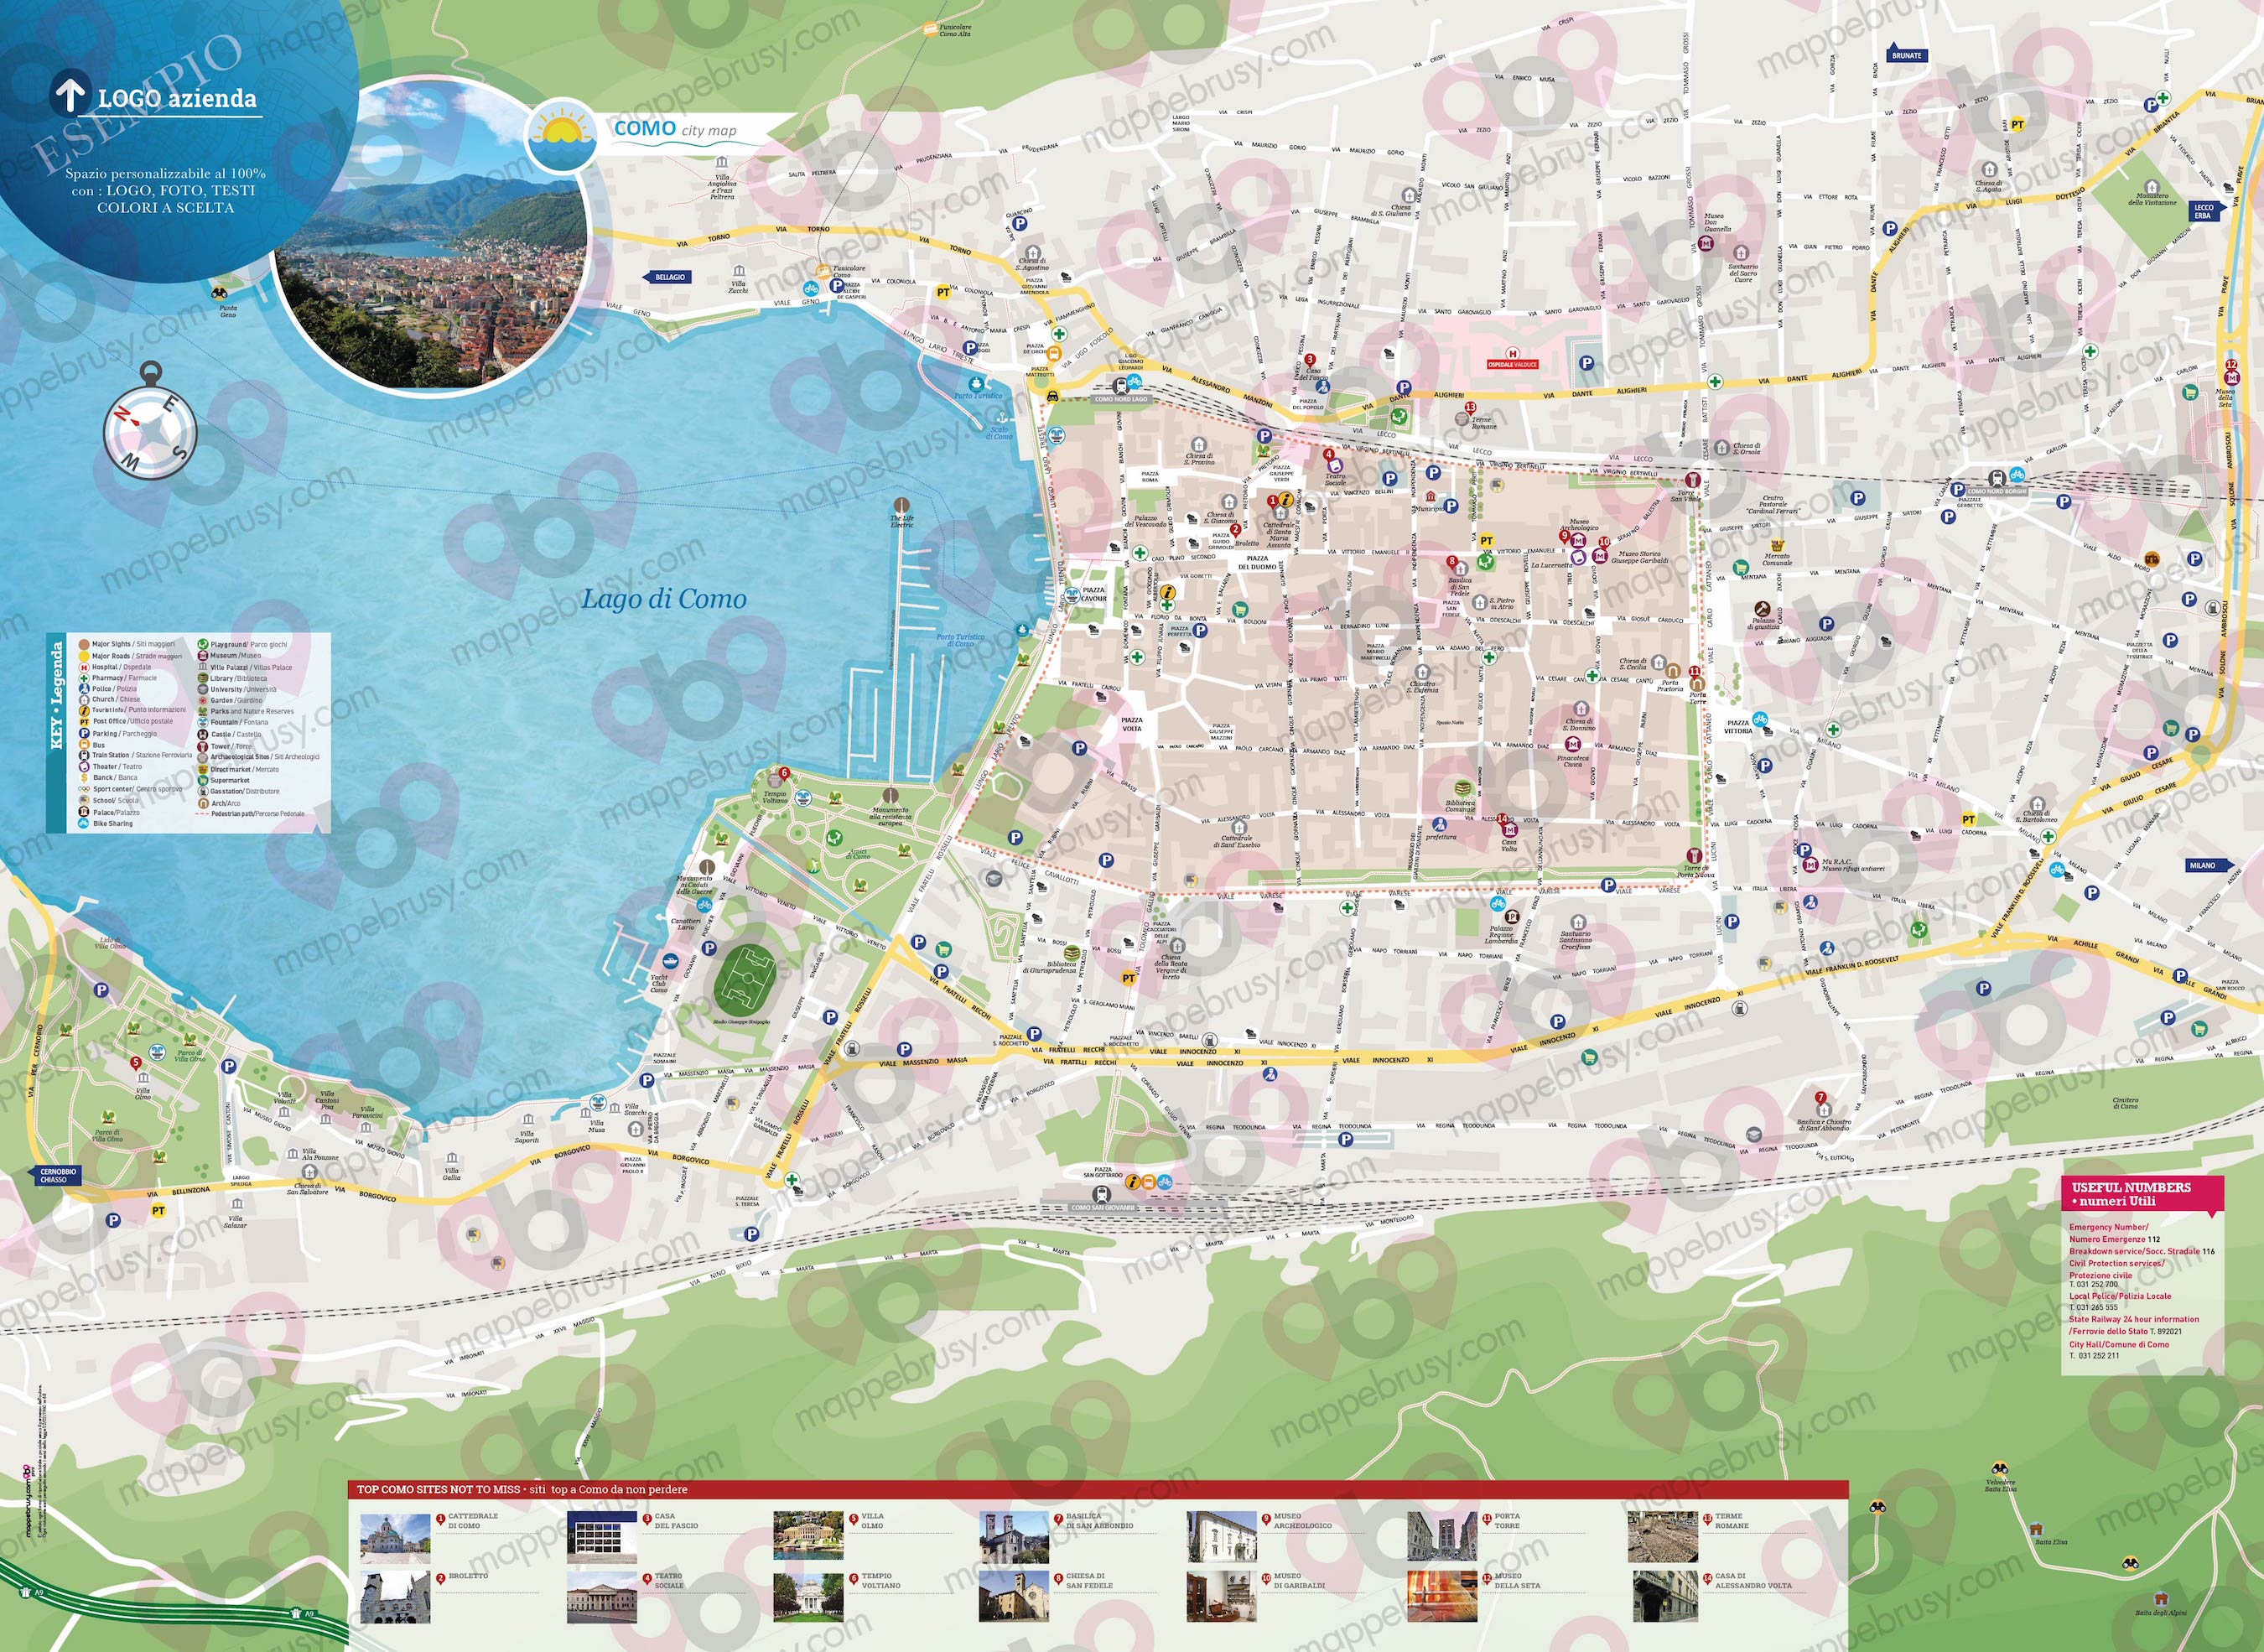 Mappa di Como - Como city map - mappa Como - mappa personalizzata di Como